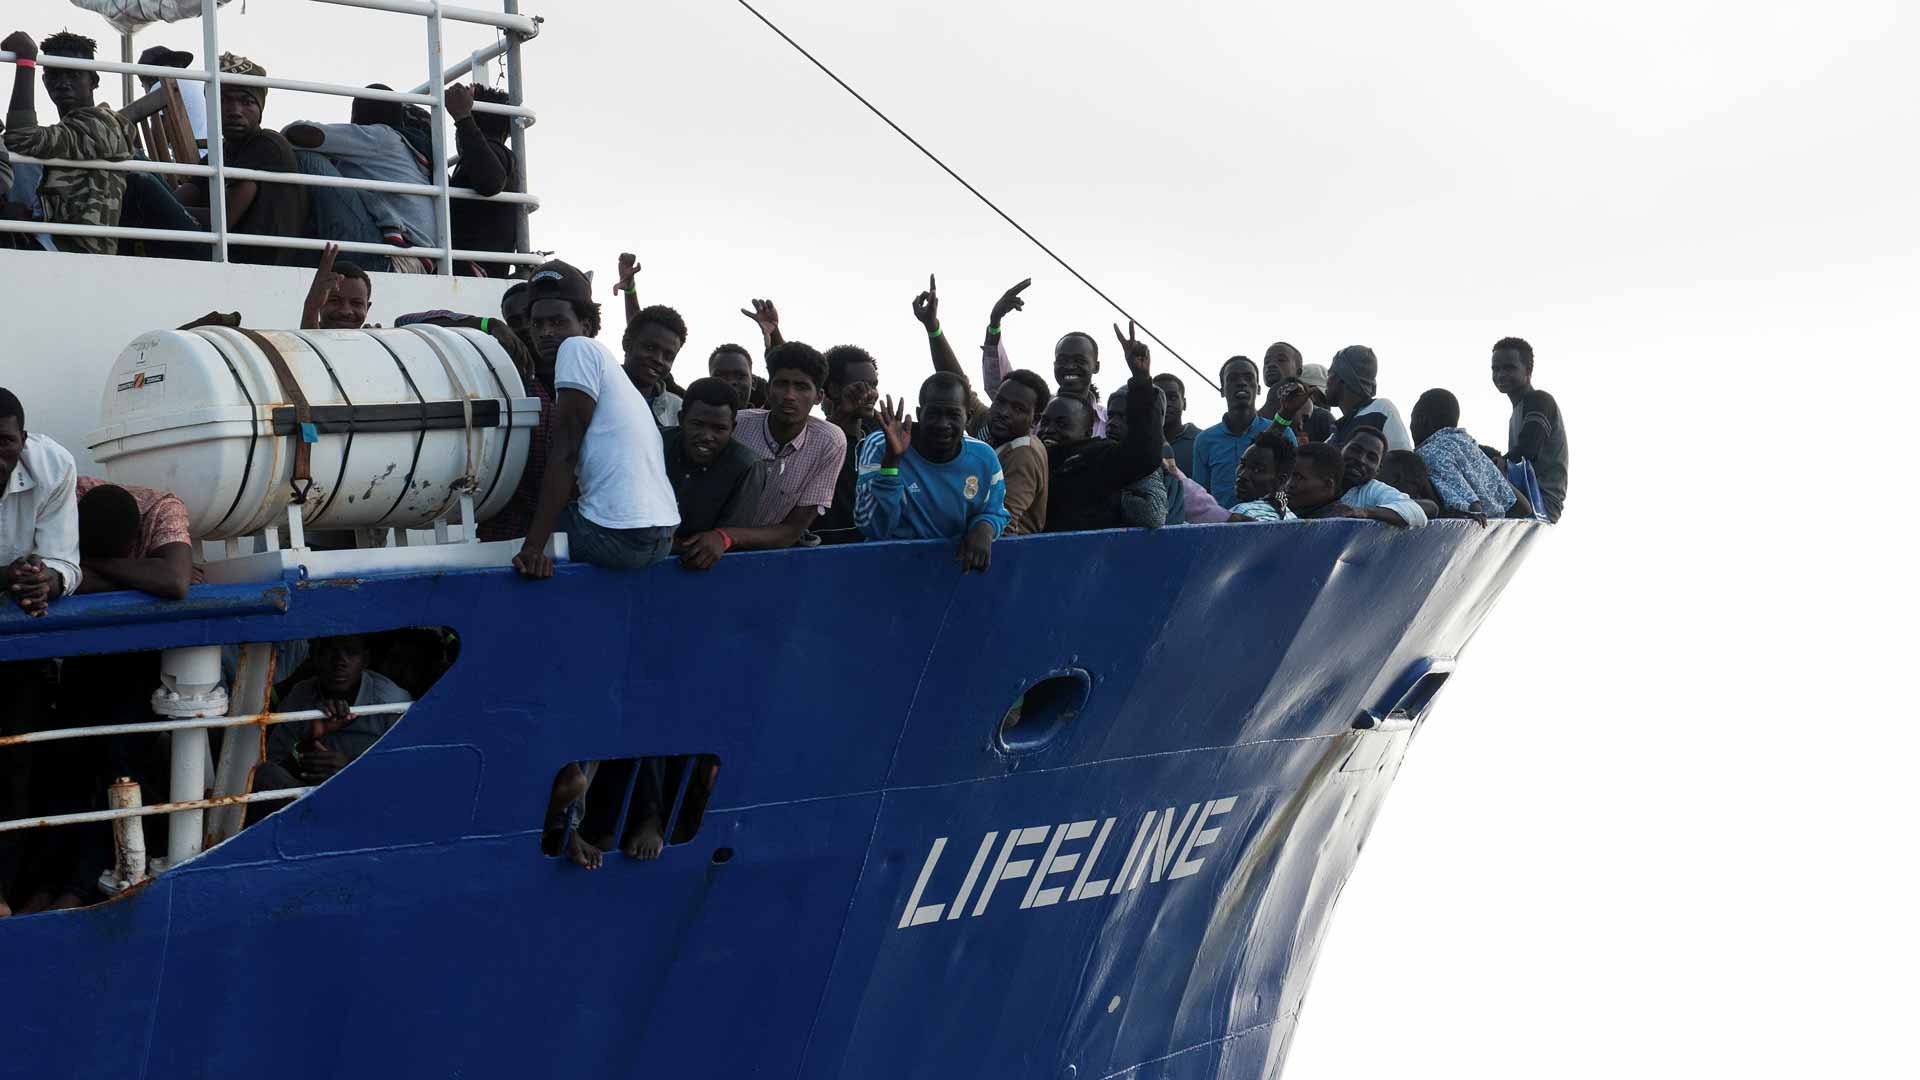 Malta permite al barco de la ONG Lifeline entrar en sus aguas para resguardarse, pero no atracar